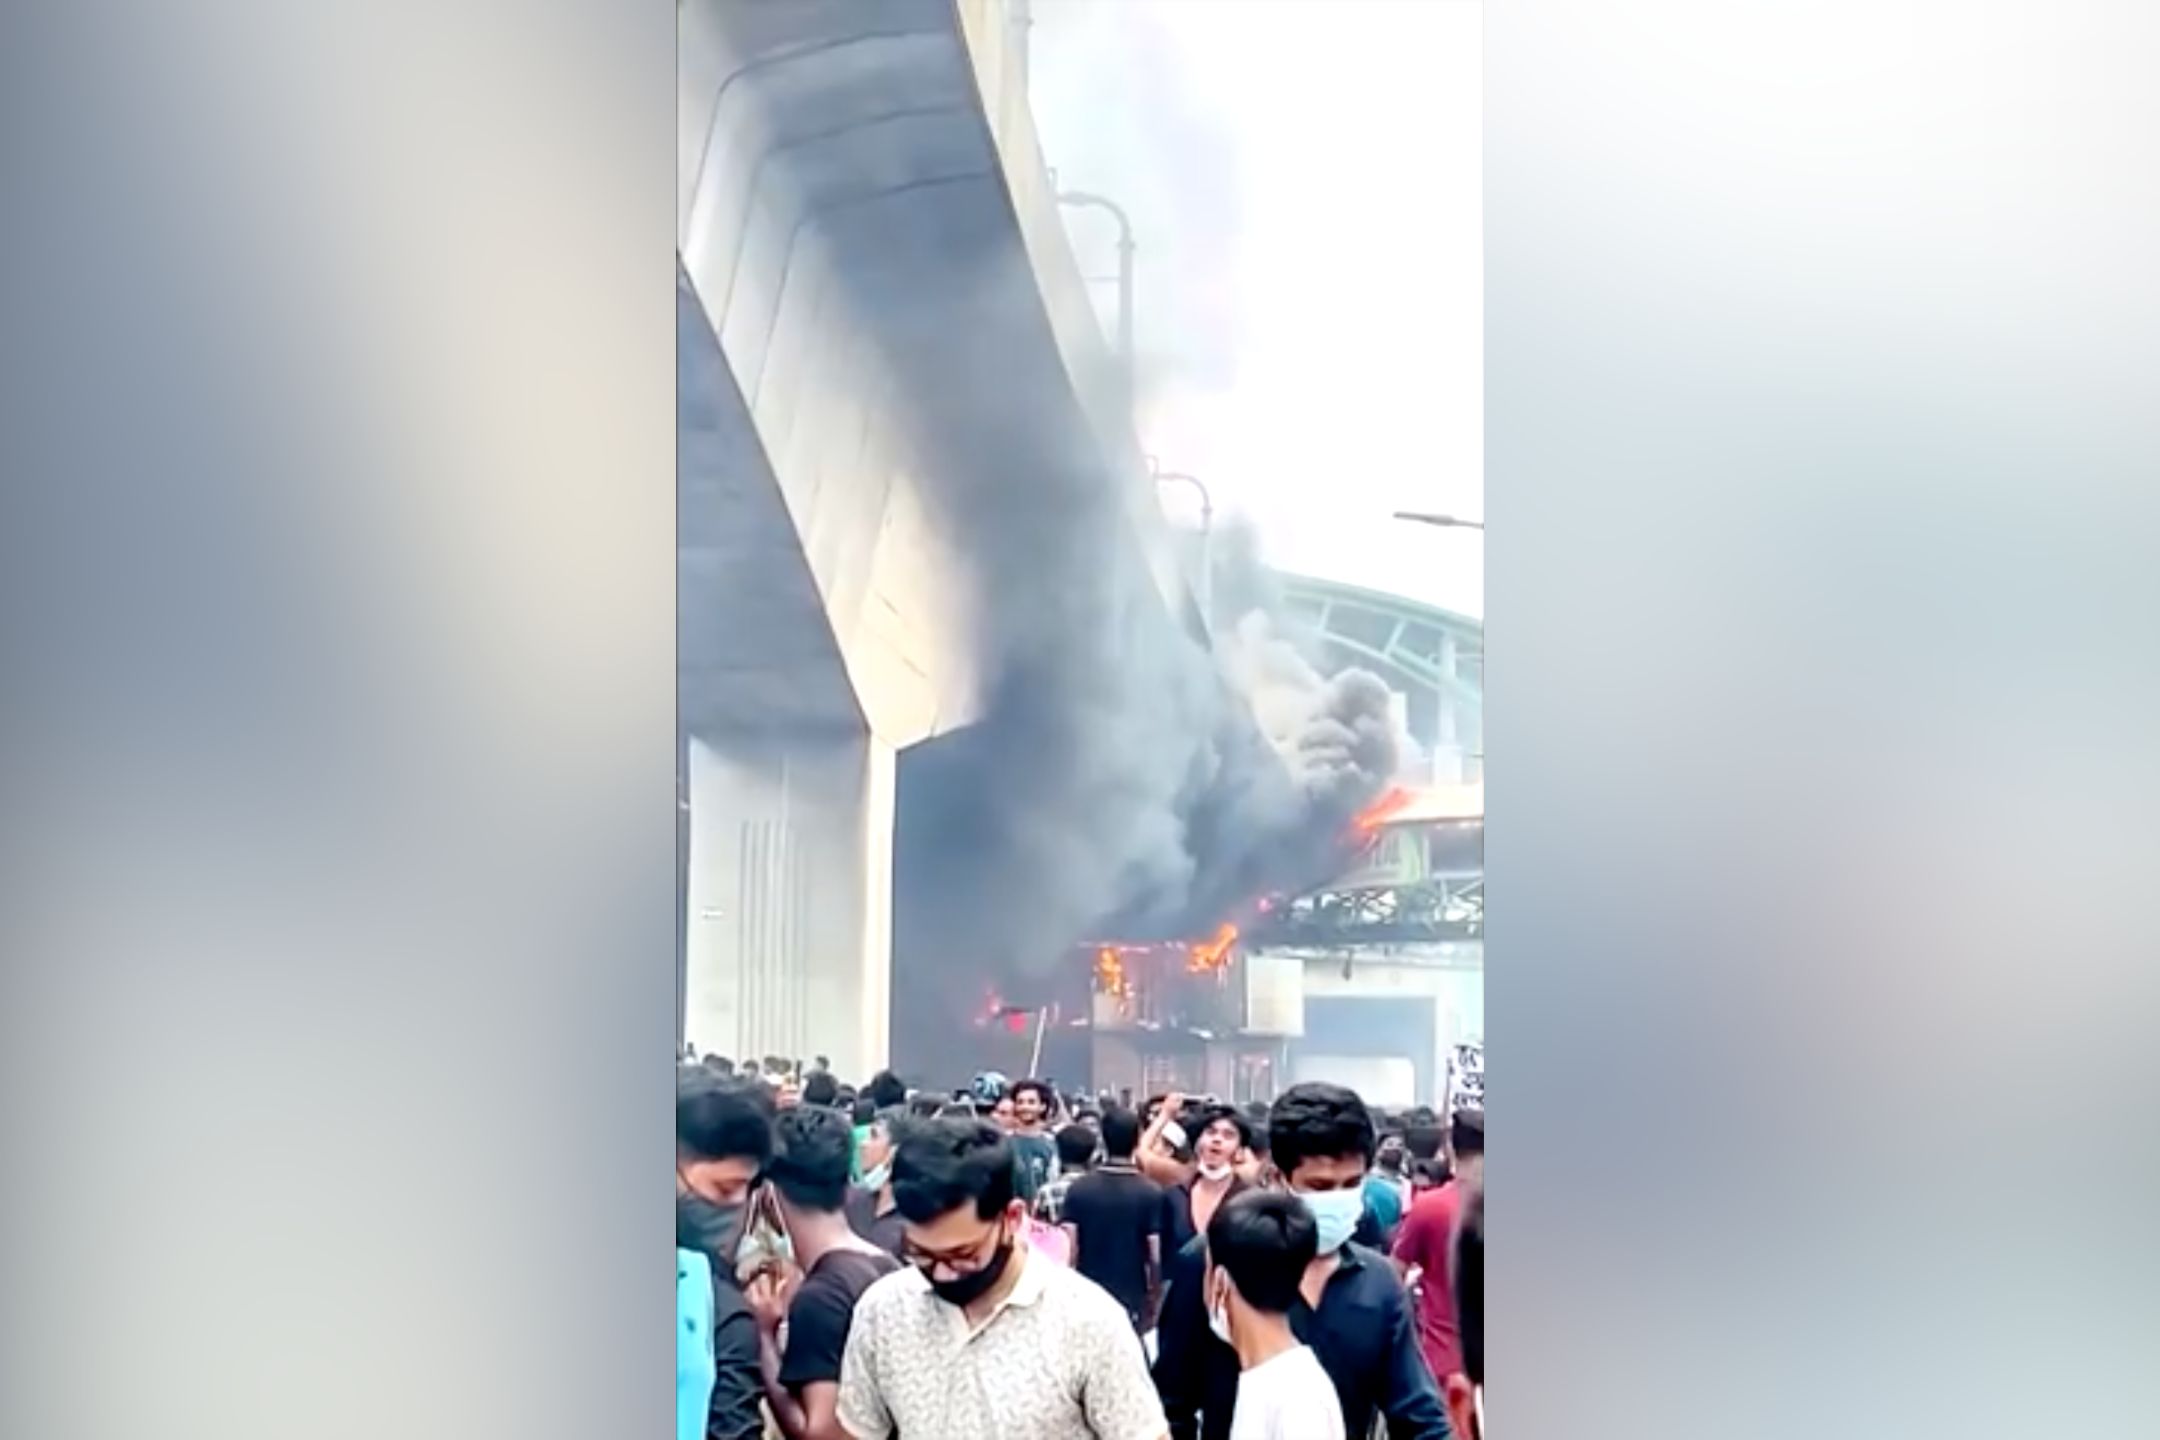 孟国示威者不满政府新制 纵火烧国营电视台大楼